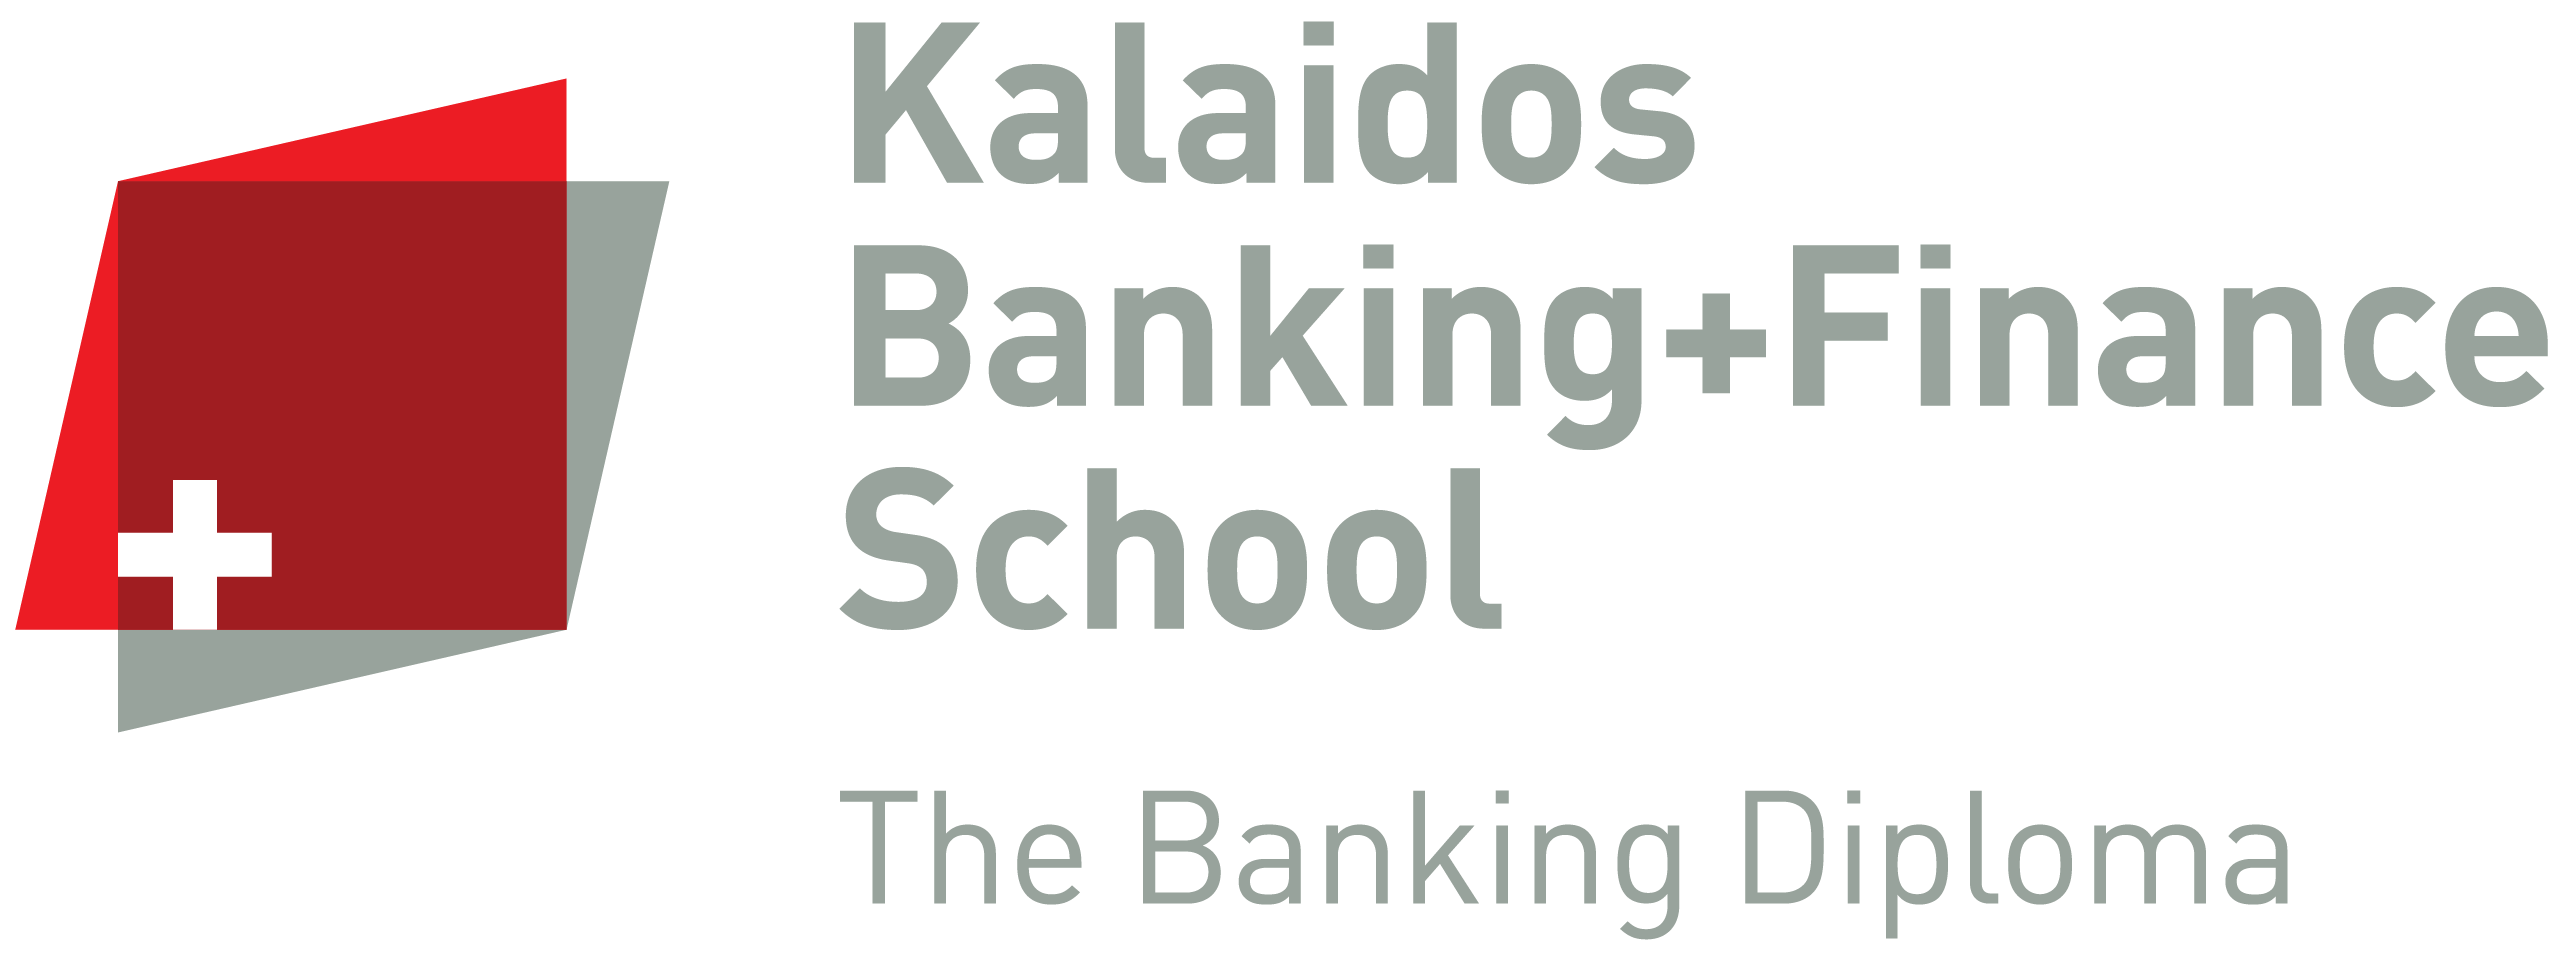 Logo Kalaidos Banking+Finance School